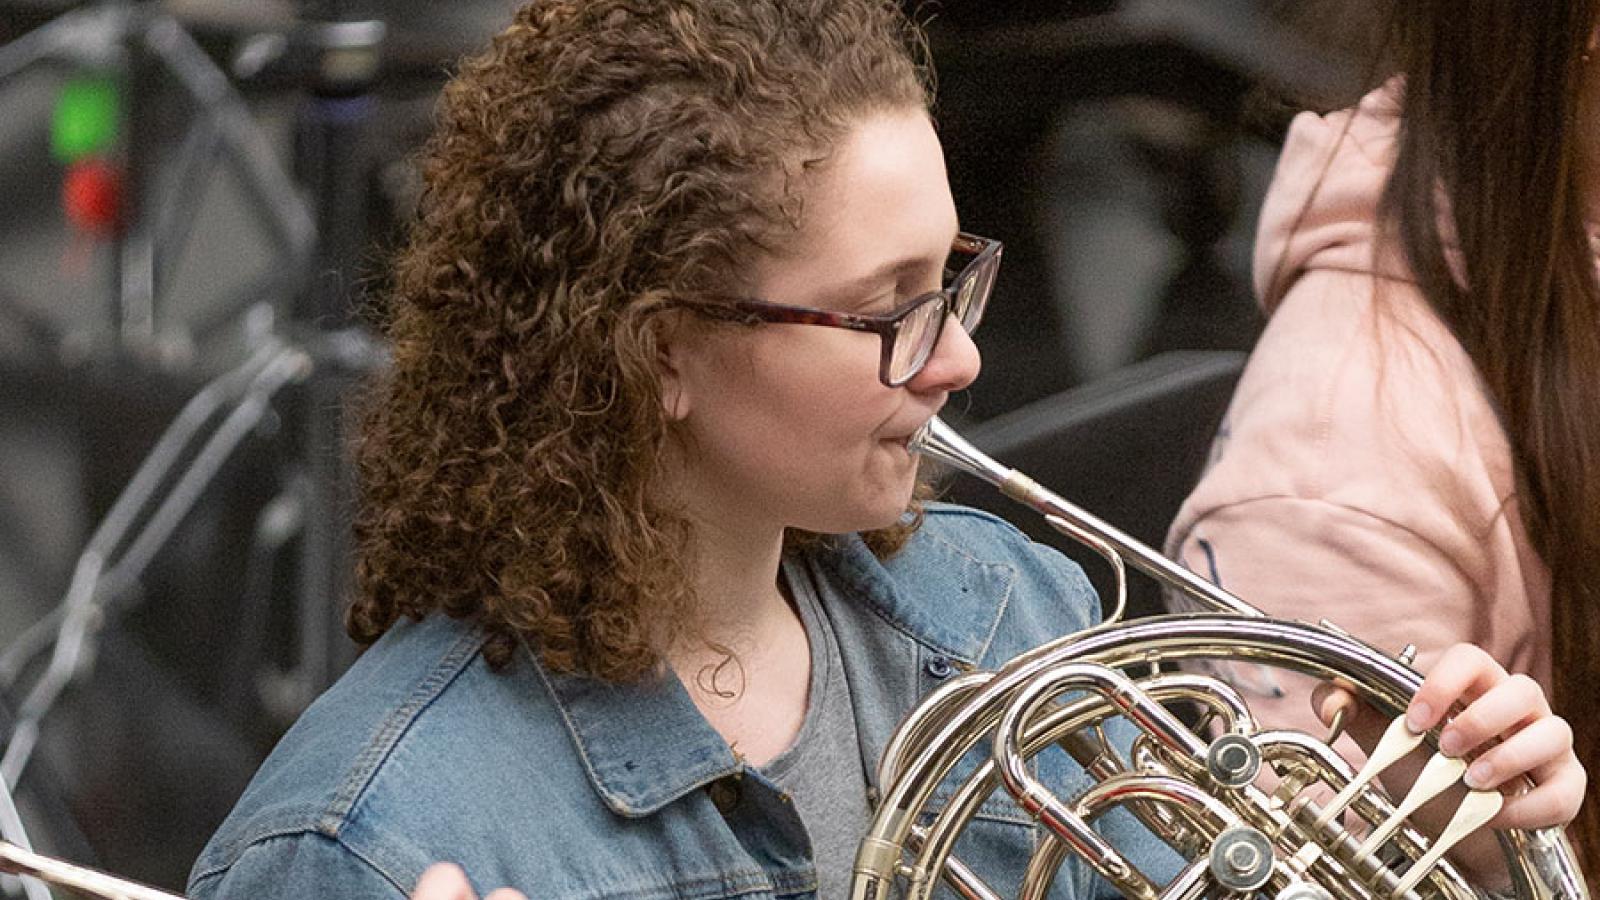 A girl plays horn